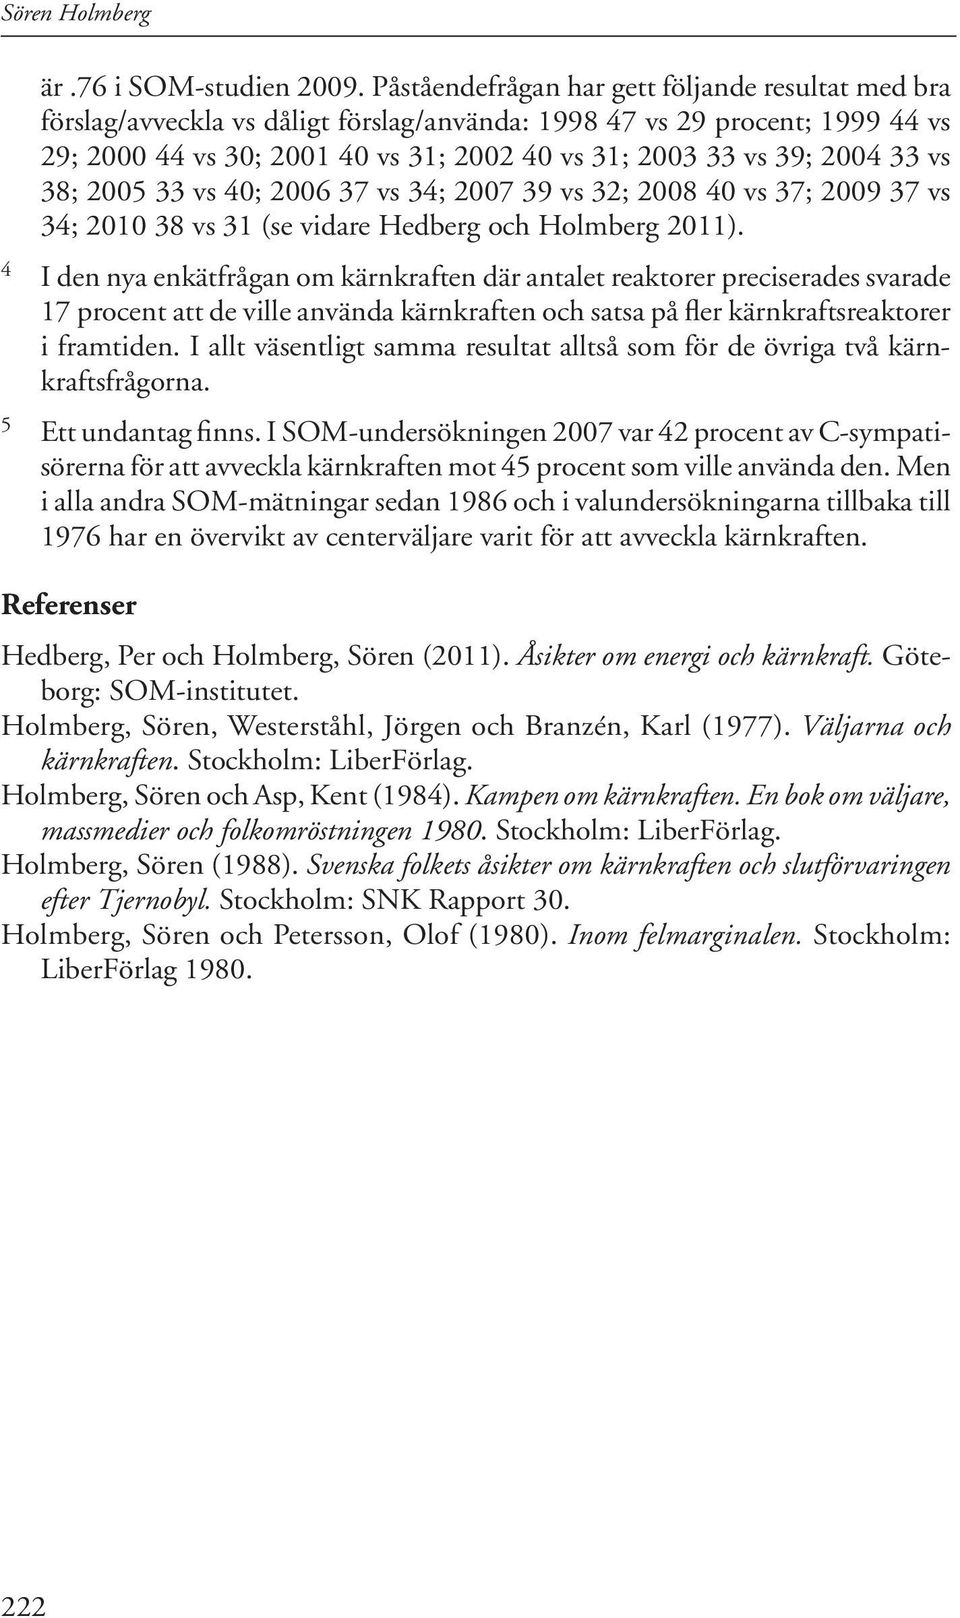 33 vs 38; 2005 33 vs 40; 2006 37 vs 34; 2007 39 vs 32; 2008 40 vs 37; 2009 37 vs 34; 2010 38 vs 31 (se vidare Hedberg och Holmberg 2011).